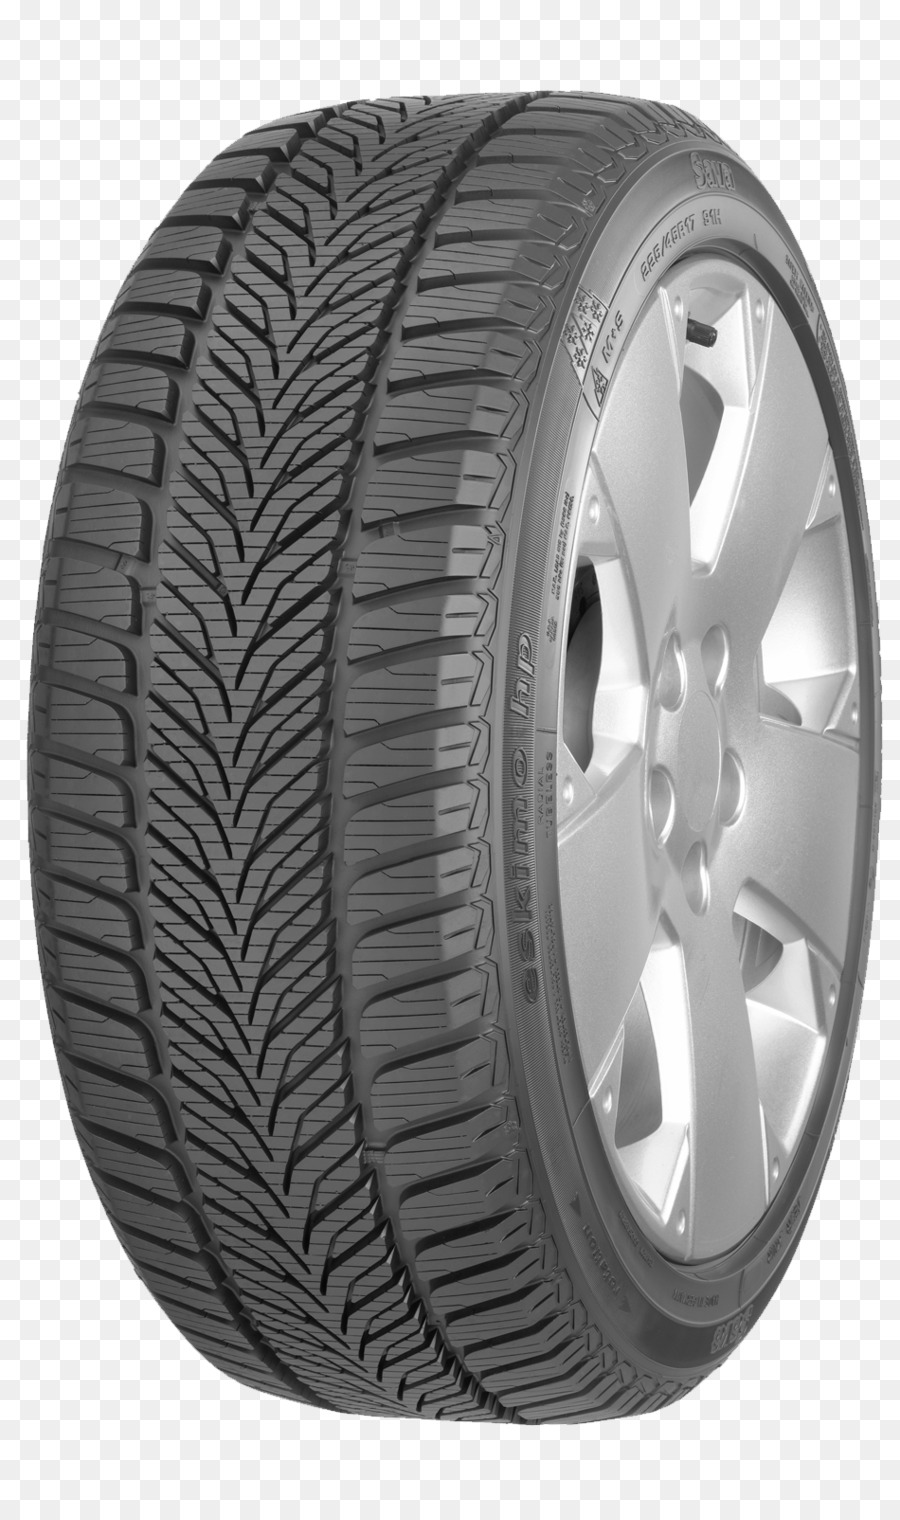 Auto Goodyear Tire und Rubber Company, Schnee-Reifen von Goodyear Dunlop-Sava-Reifen - Reifen